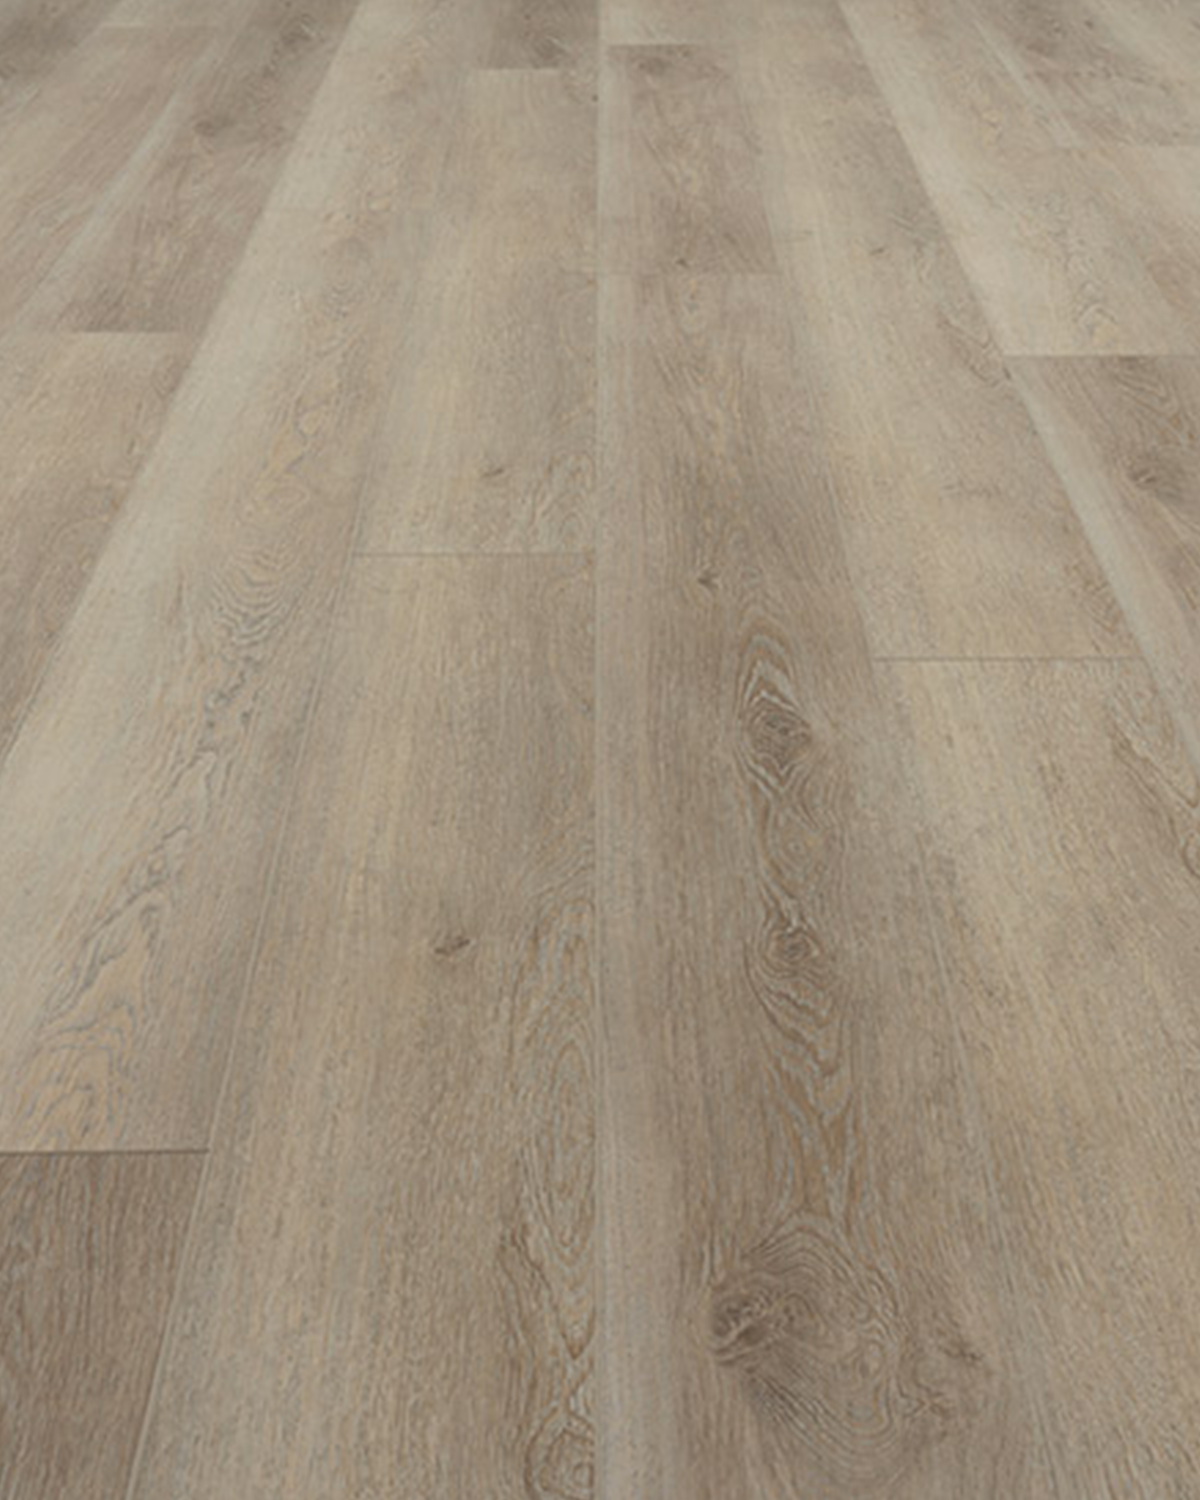 SIMPLY SILVER - LVP Waterproof Flooring - 7.15 in. wide plank